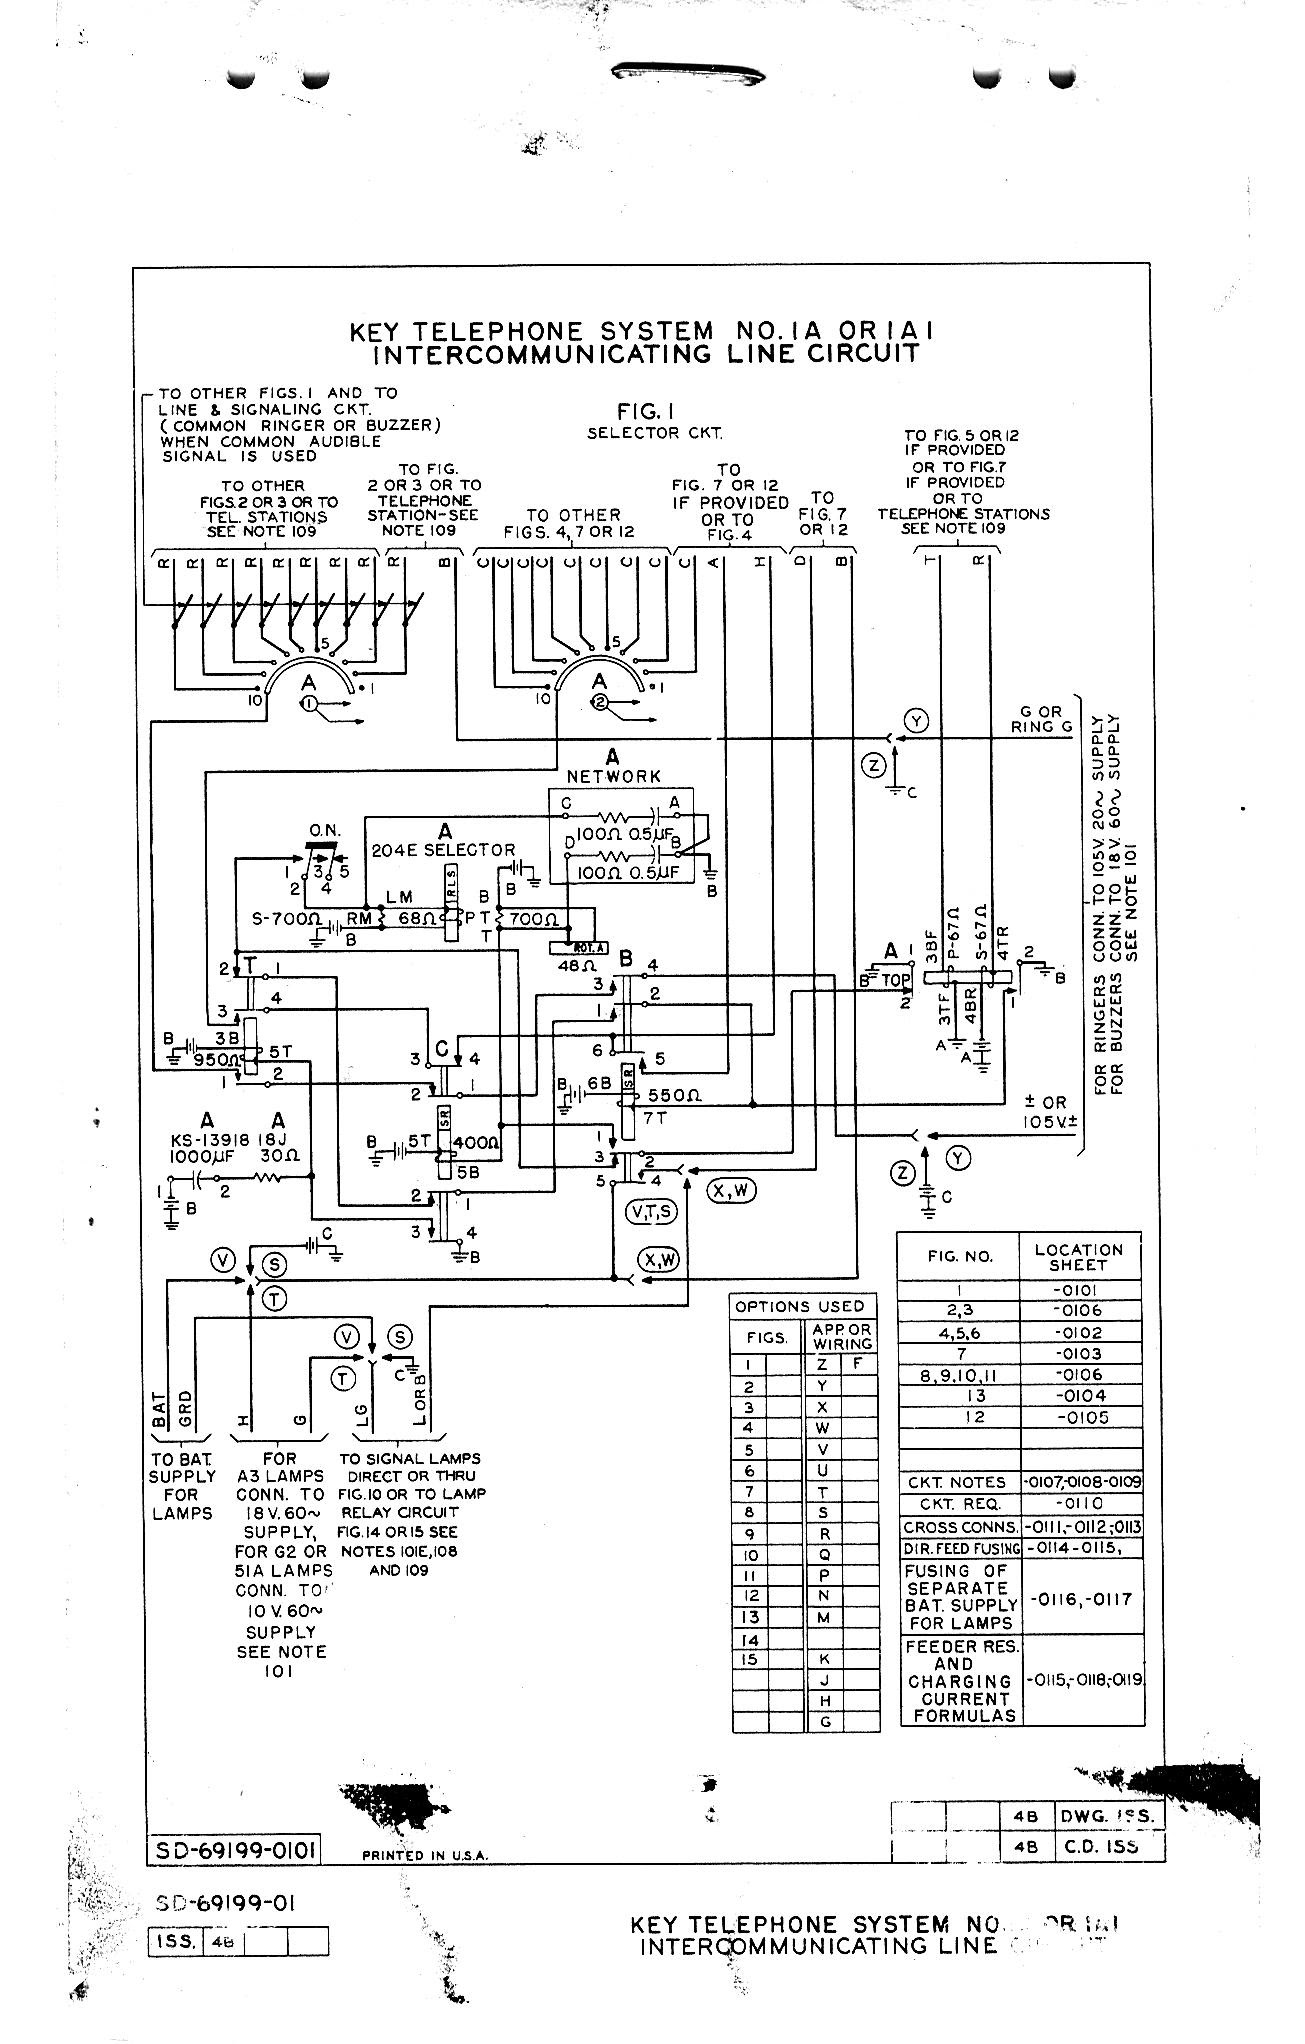 Western Electric 2500 Wiring Diagram - Complete Wiring Schemas